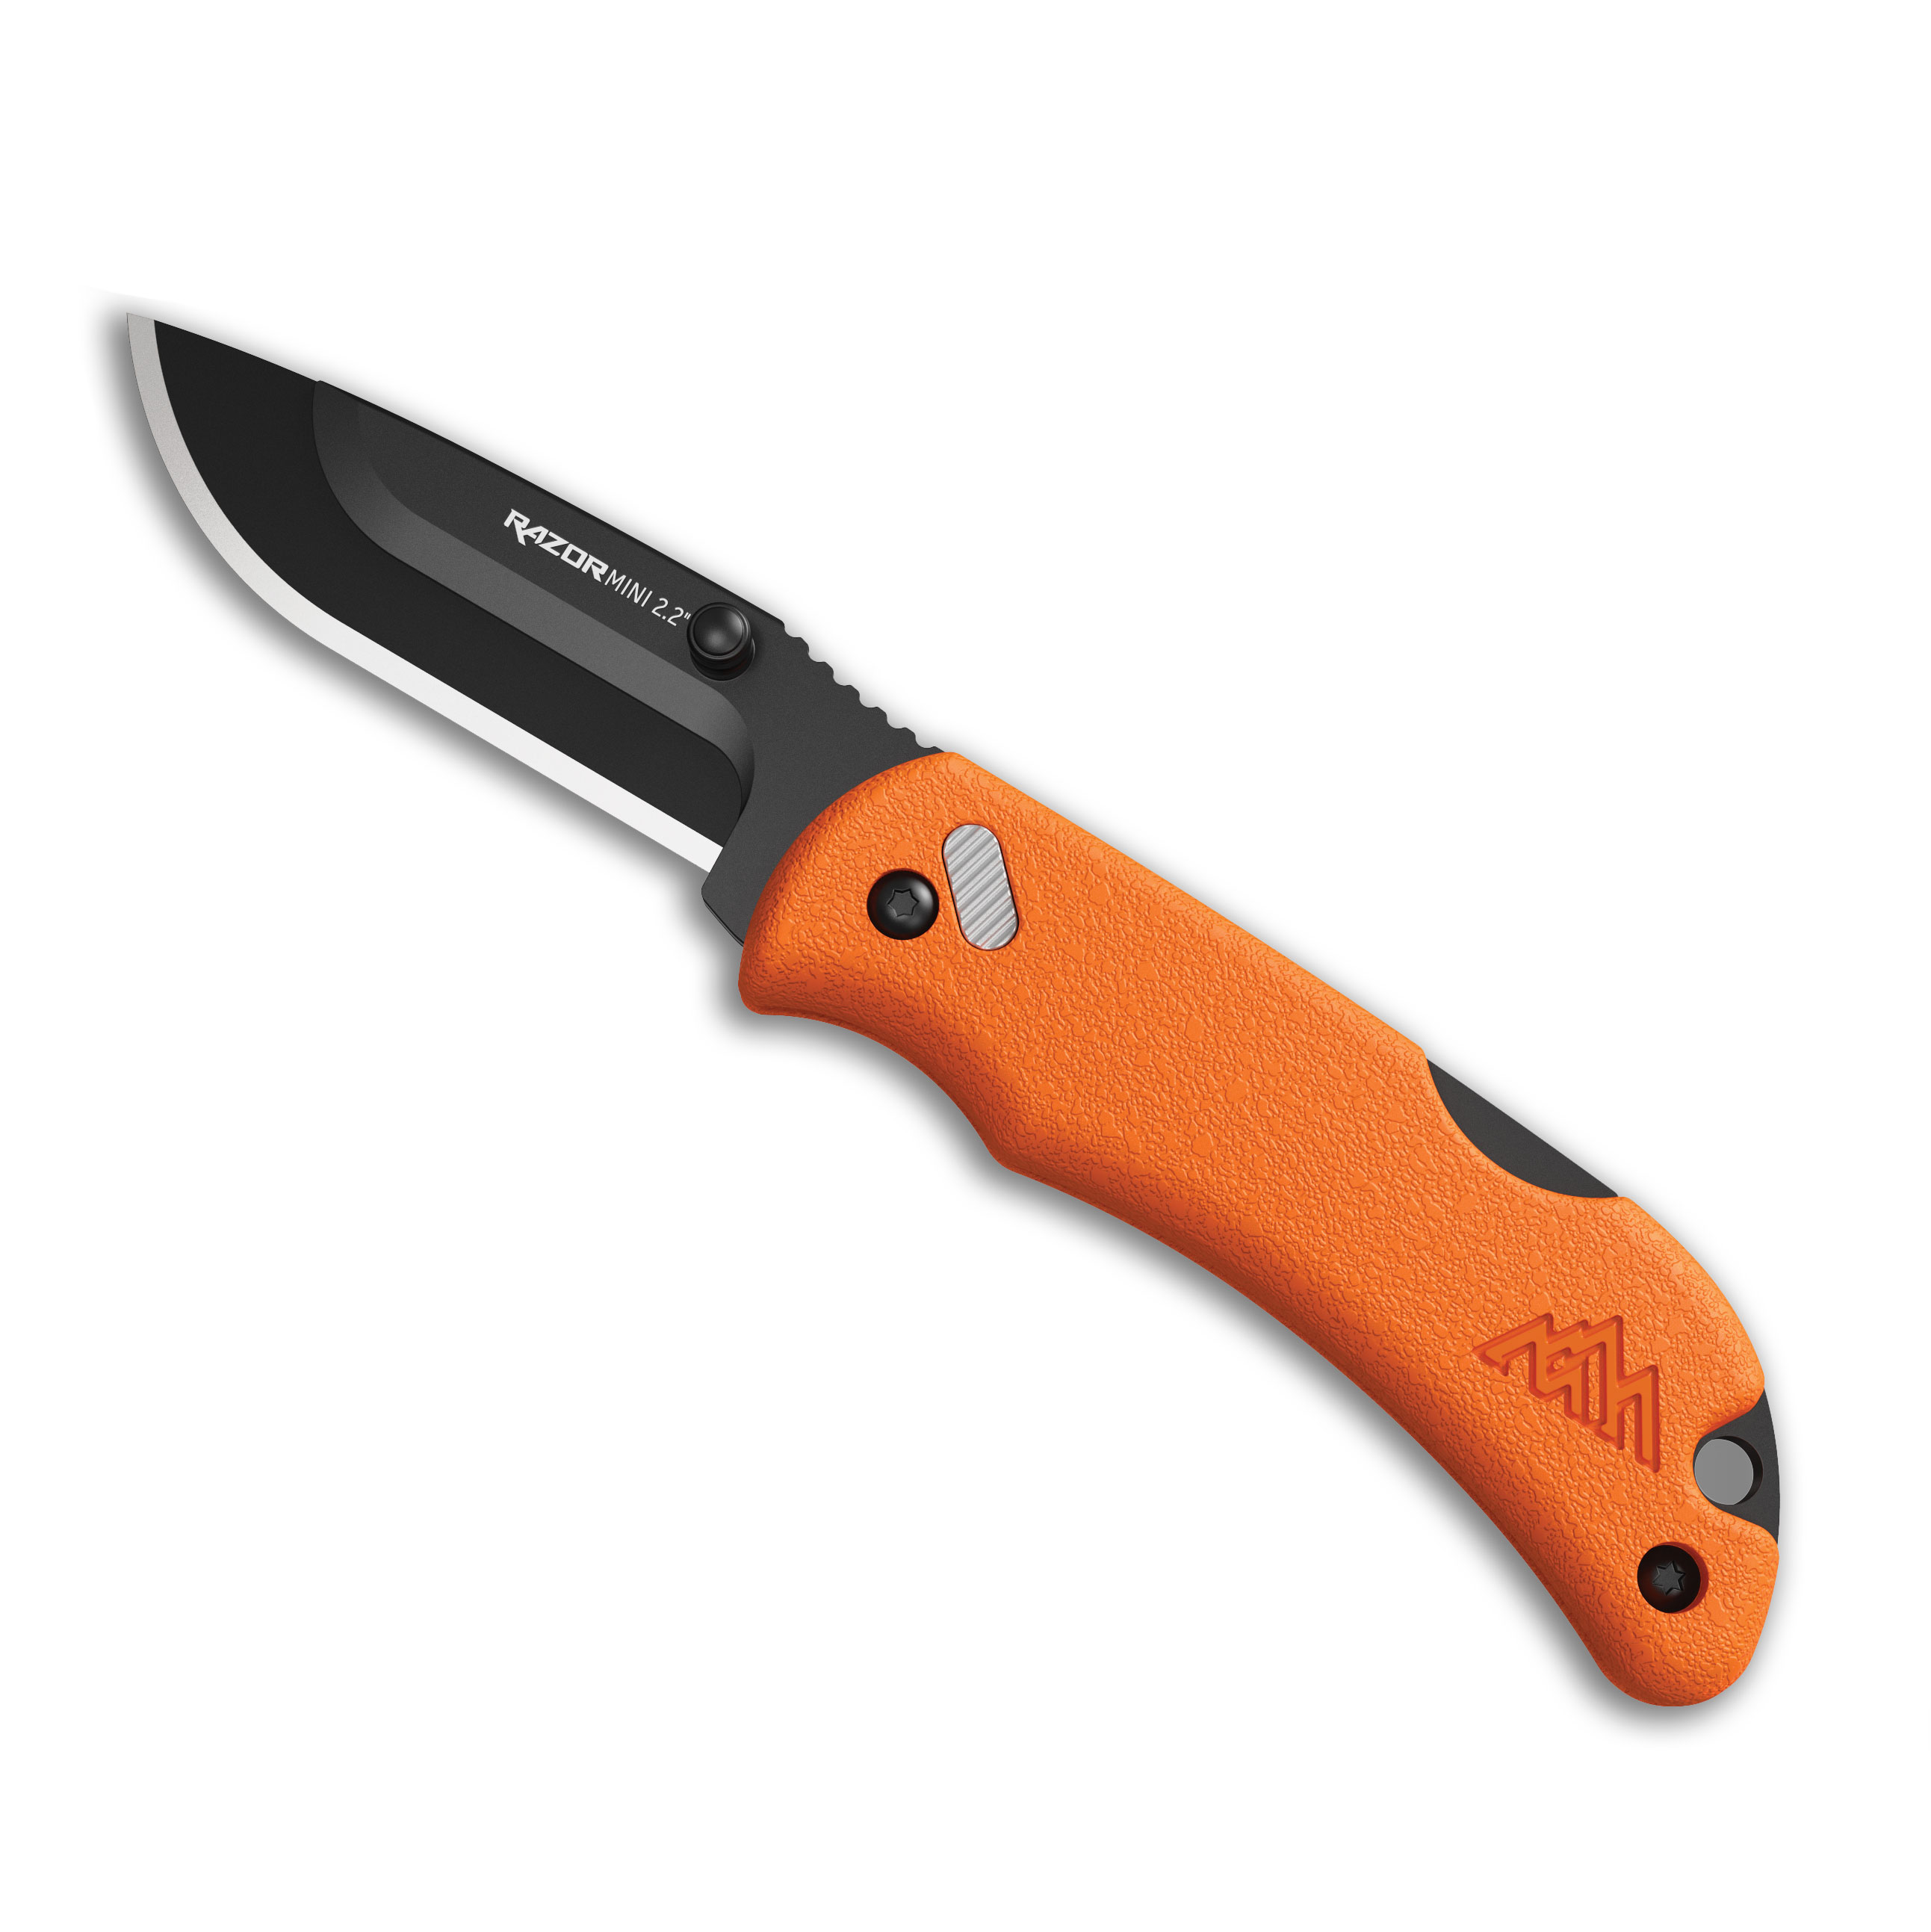 https://op2.0ps.us/original/opplanet-outdoor-edge-cutlery-outdoor-edge-razor-mini-2-2-orange-pms-w-2-black-dp-blds-main